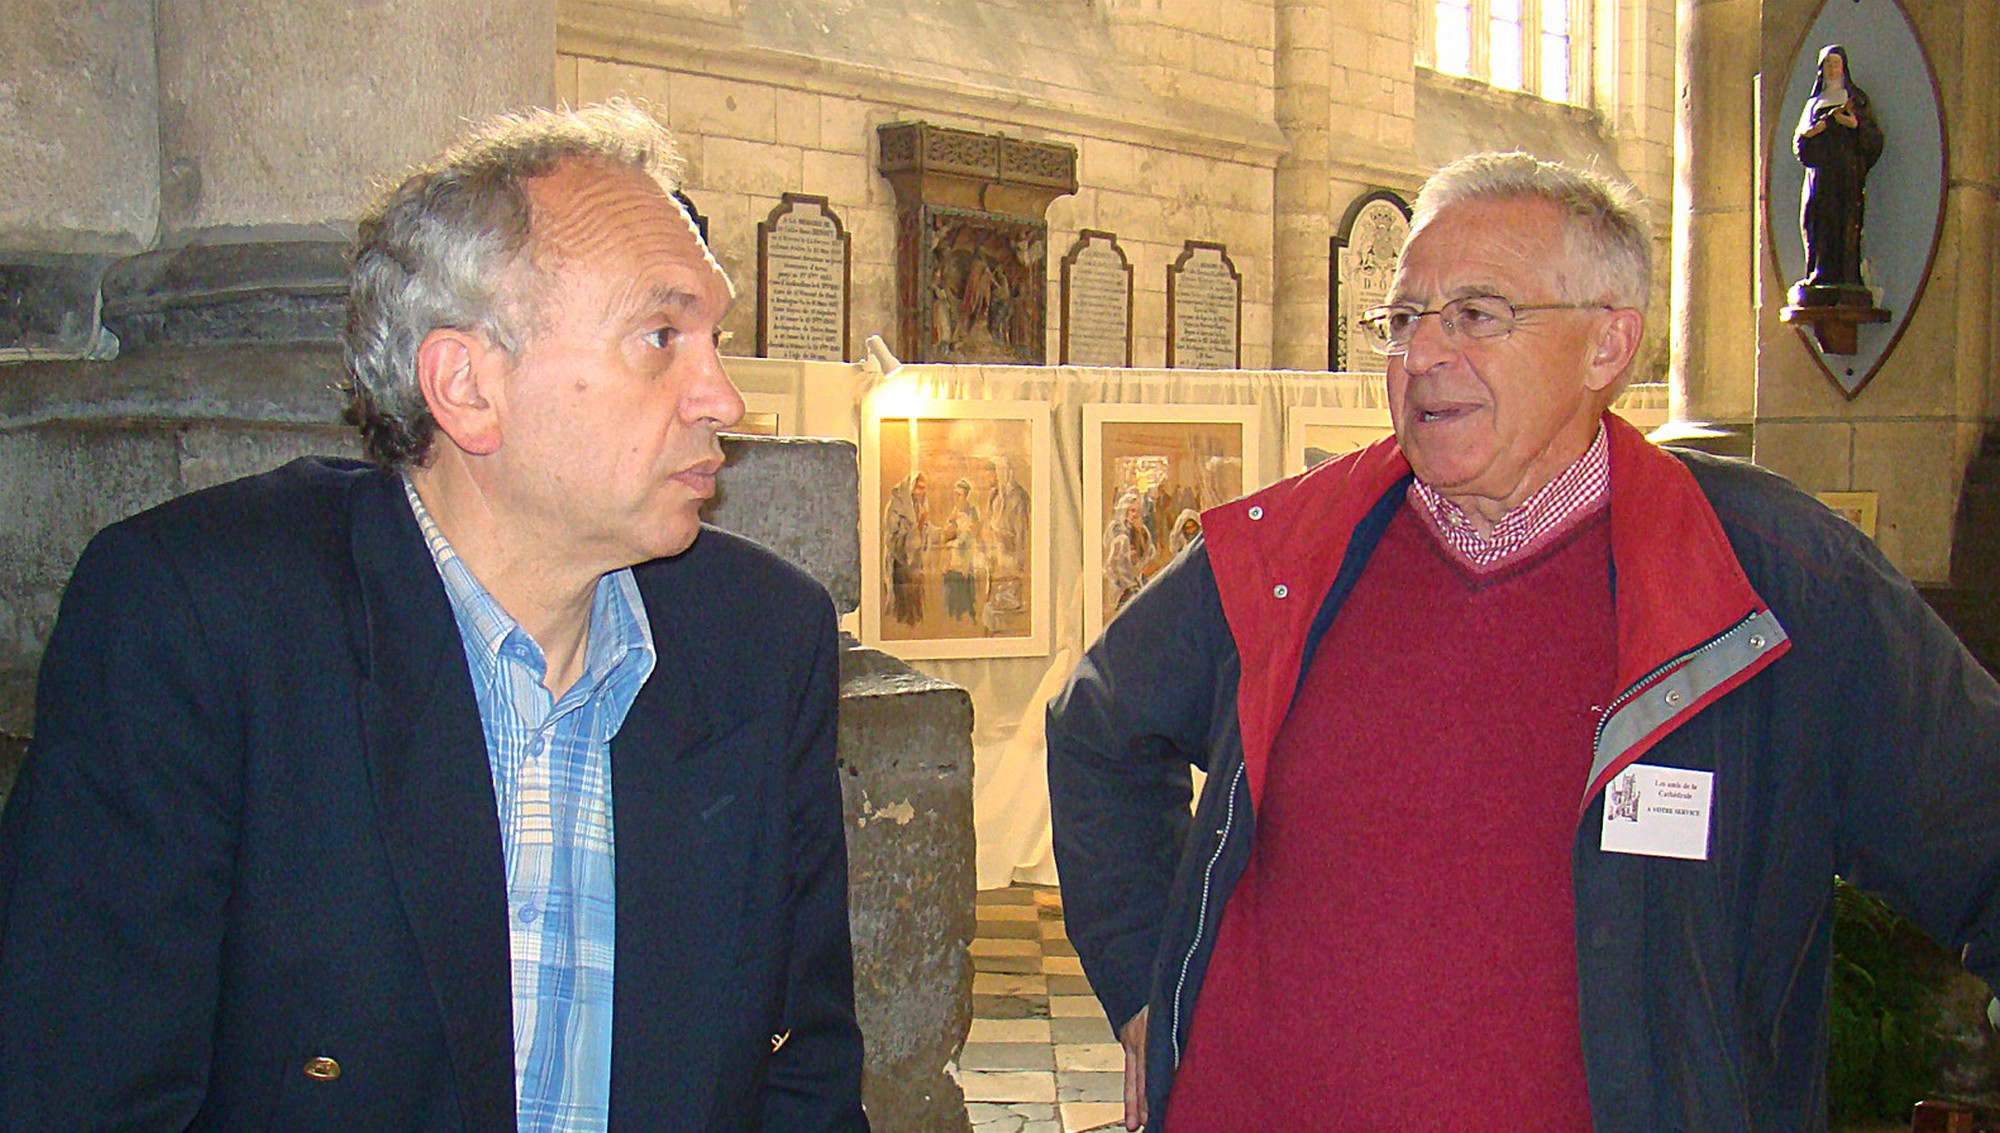 Le président des Amis de la Cathédrale, Dominique Merlier, à gauche sur la photo, aux côtés d’un autre bénévole, Michel Grislain, ancien trésorier général du doyenné.